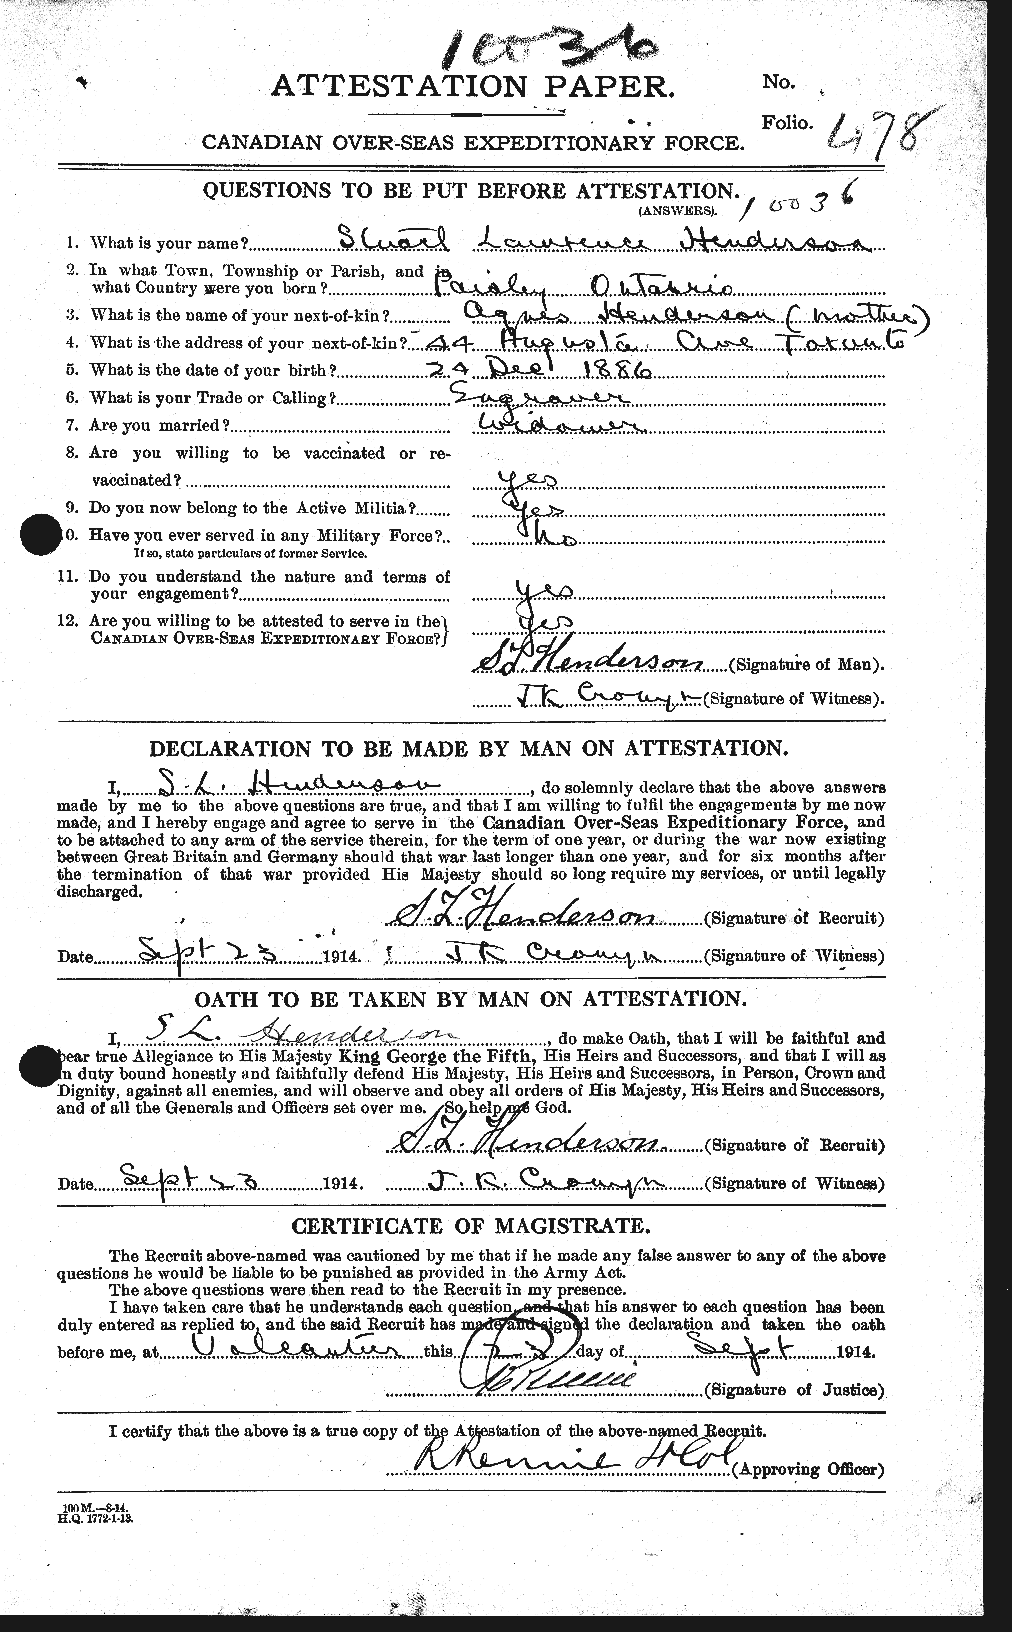 Dossiers du Personnel de la Première Guerre mondiale - CEC 387391a